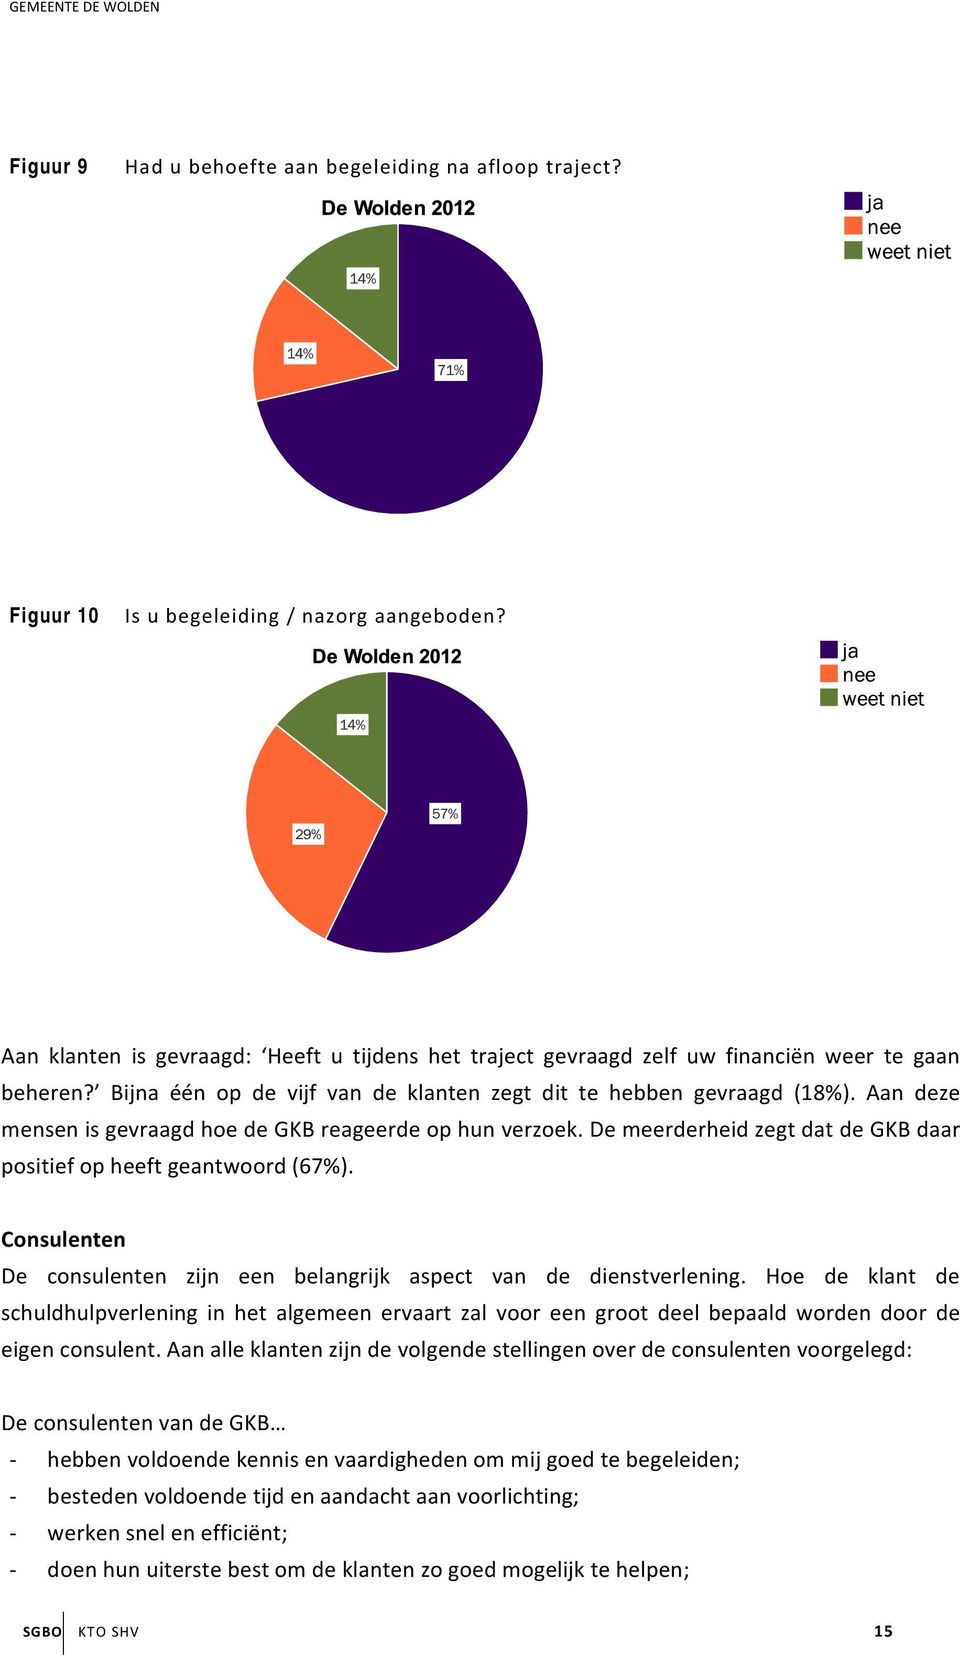 Aan deze mensen is gevraagd hoe de GKB reageerde op hun verzoek. De meerderheid zegt dat de GKB daar positief op heeft geantwoord (67%).